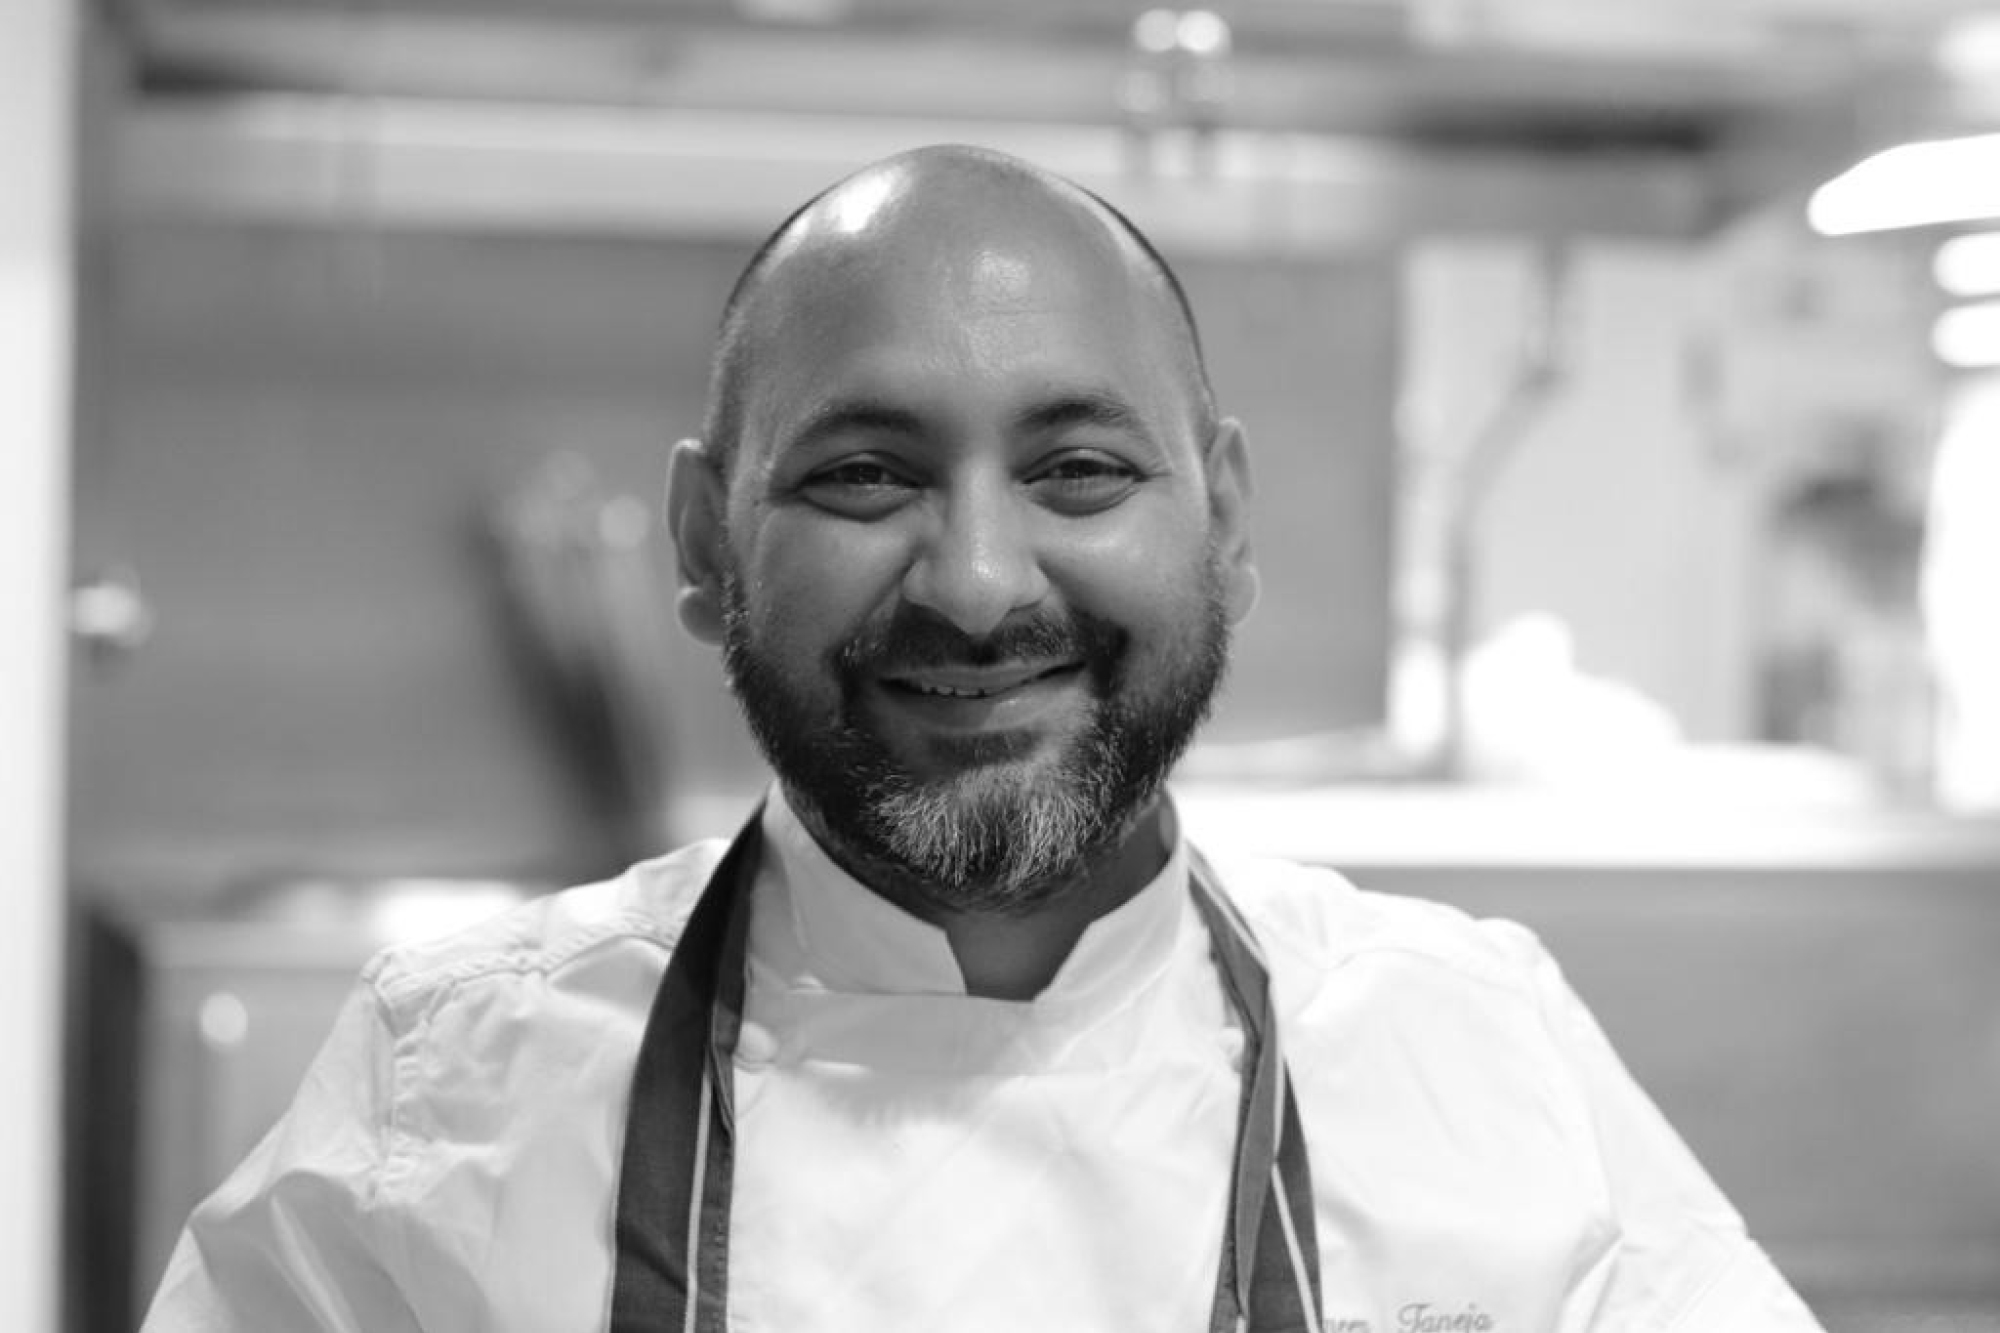 Benares executive chef, Sameer Taneja